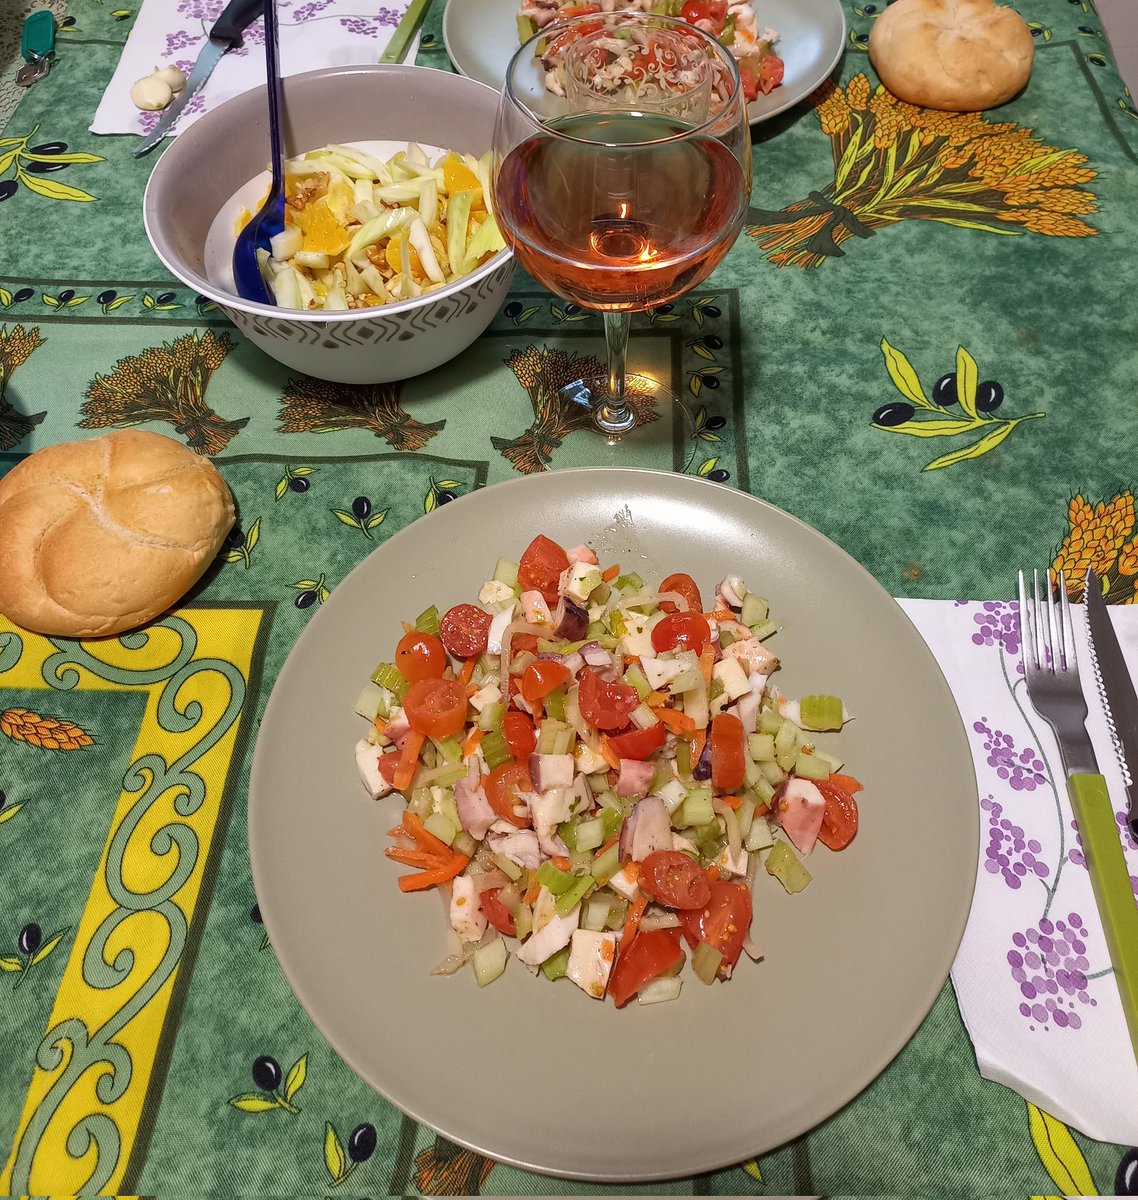 Buon pranzo 🍽🍷
Oggi insalatina di mare con sedano e pomodorini con un bel bicchiere di Cerasuolo D'Abruzzo🥰😊😋